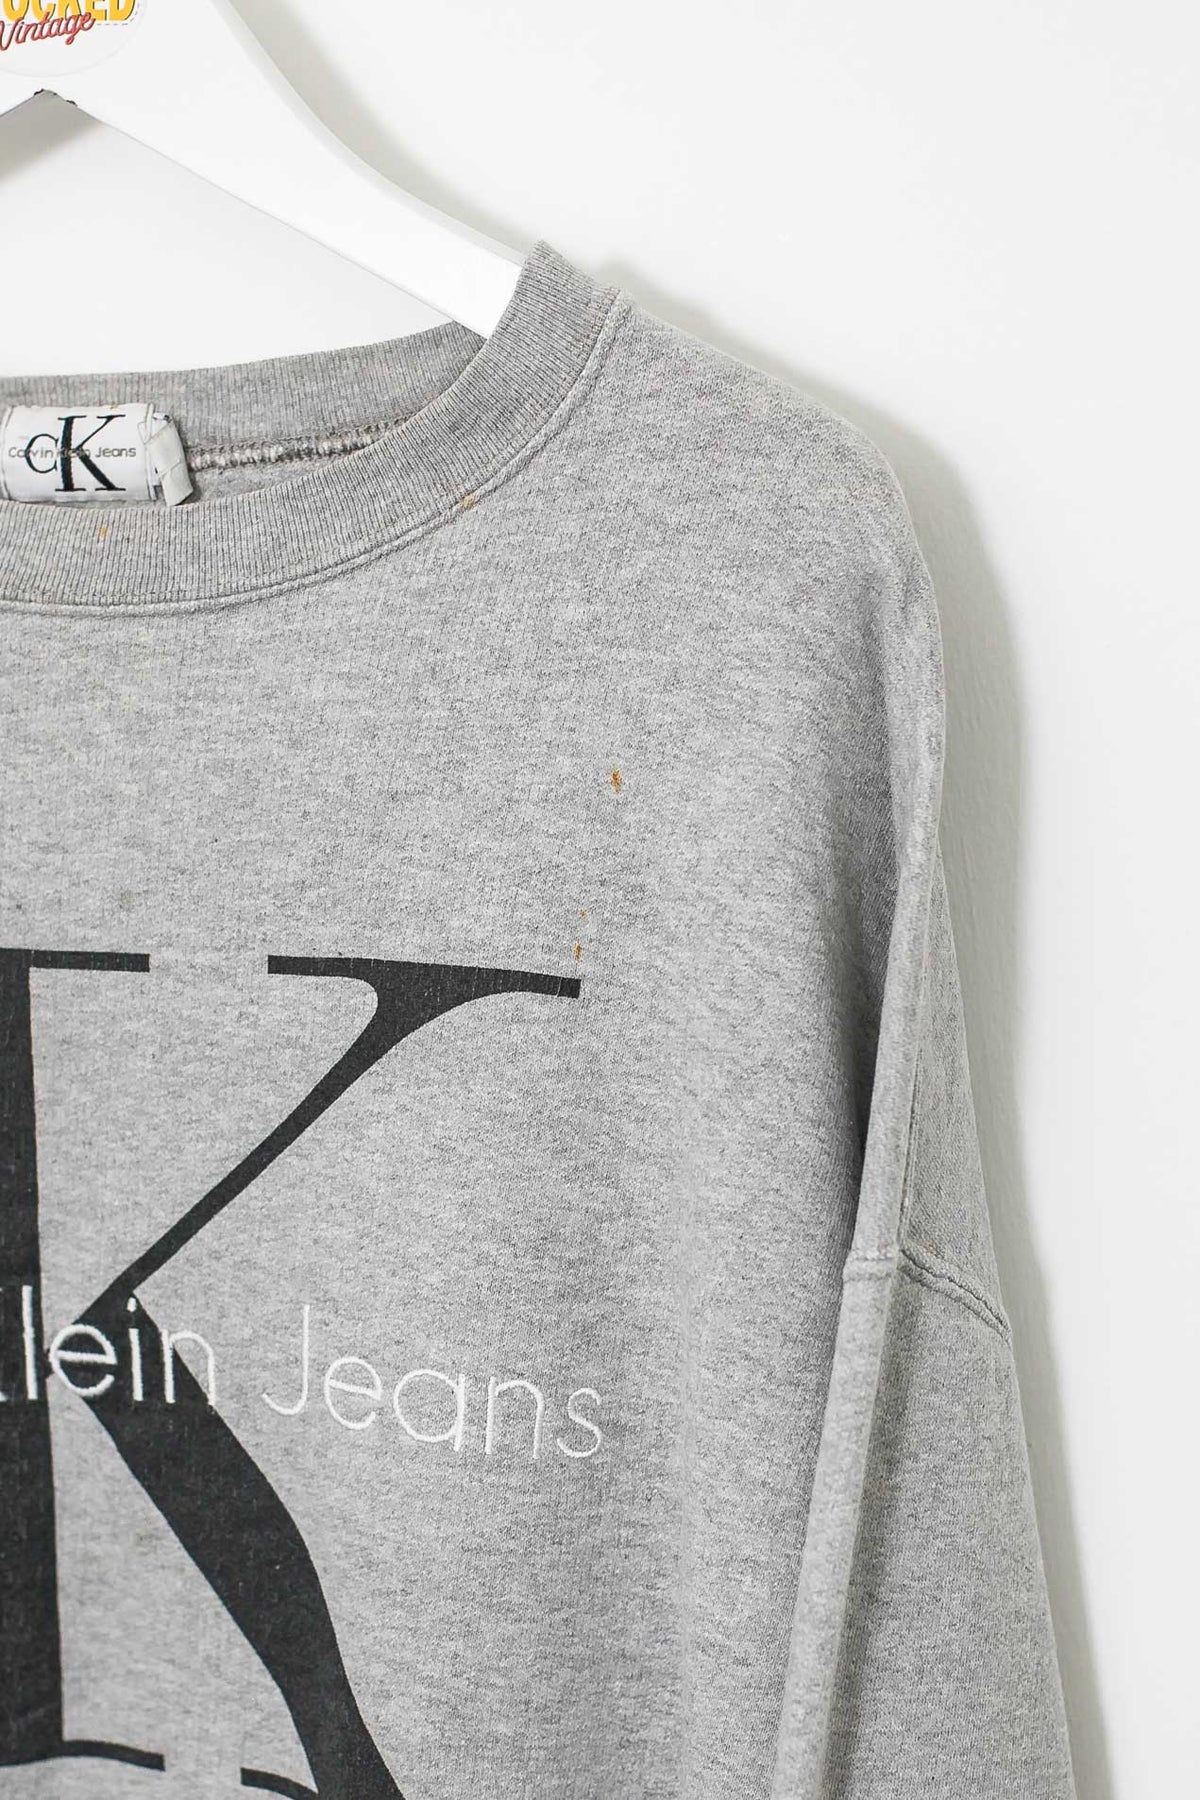 00s Calvin Klein Sweatshirt (XL)